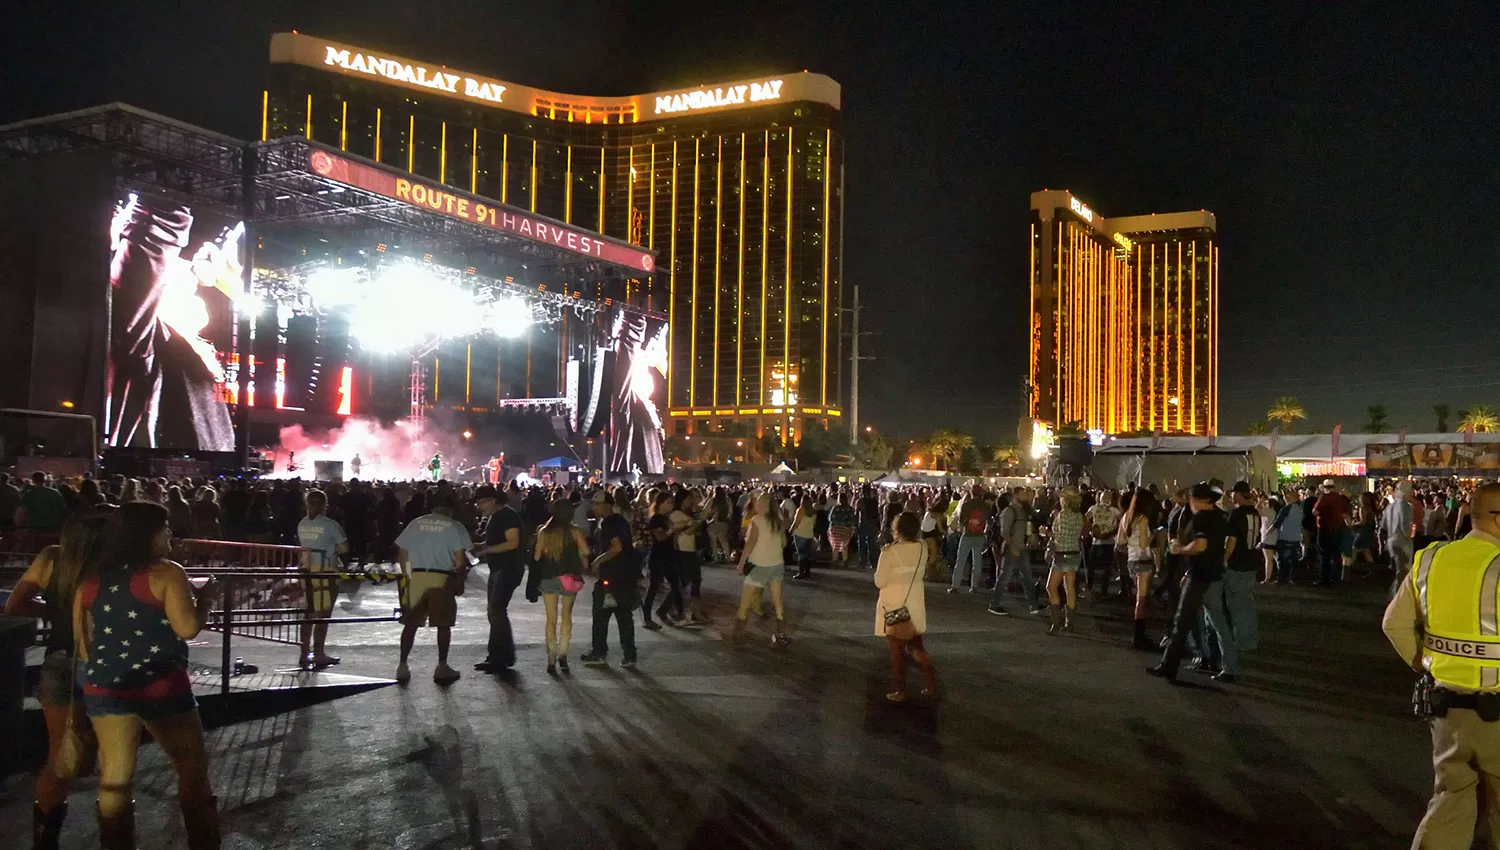 EL LUGAR DEL HECHO. La masacre ocurrió en Las Vegas. REUTERS